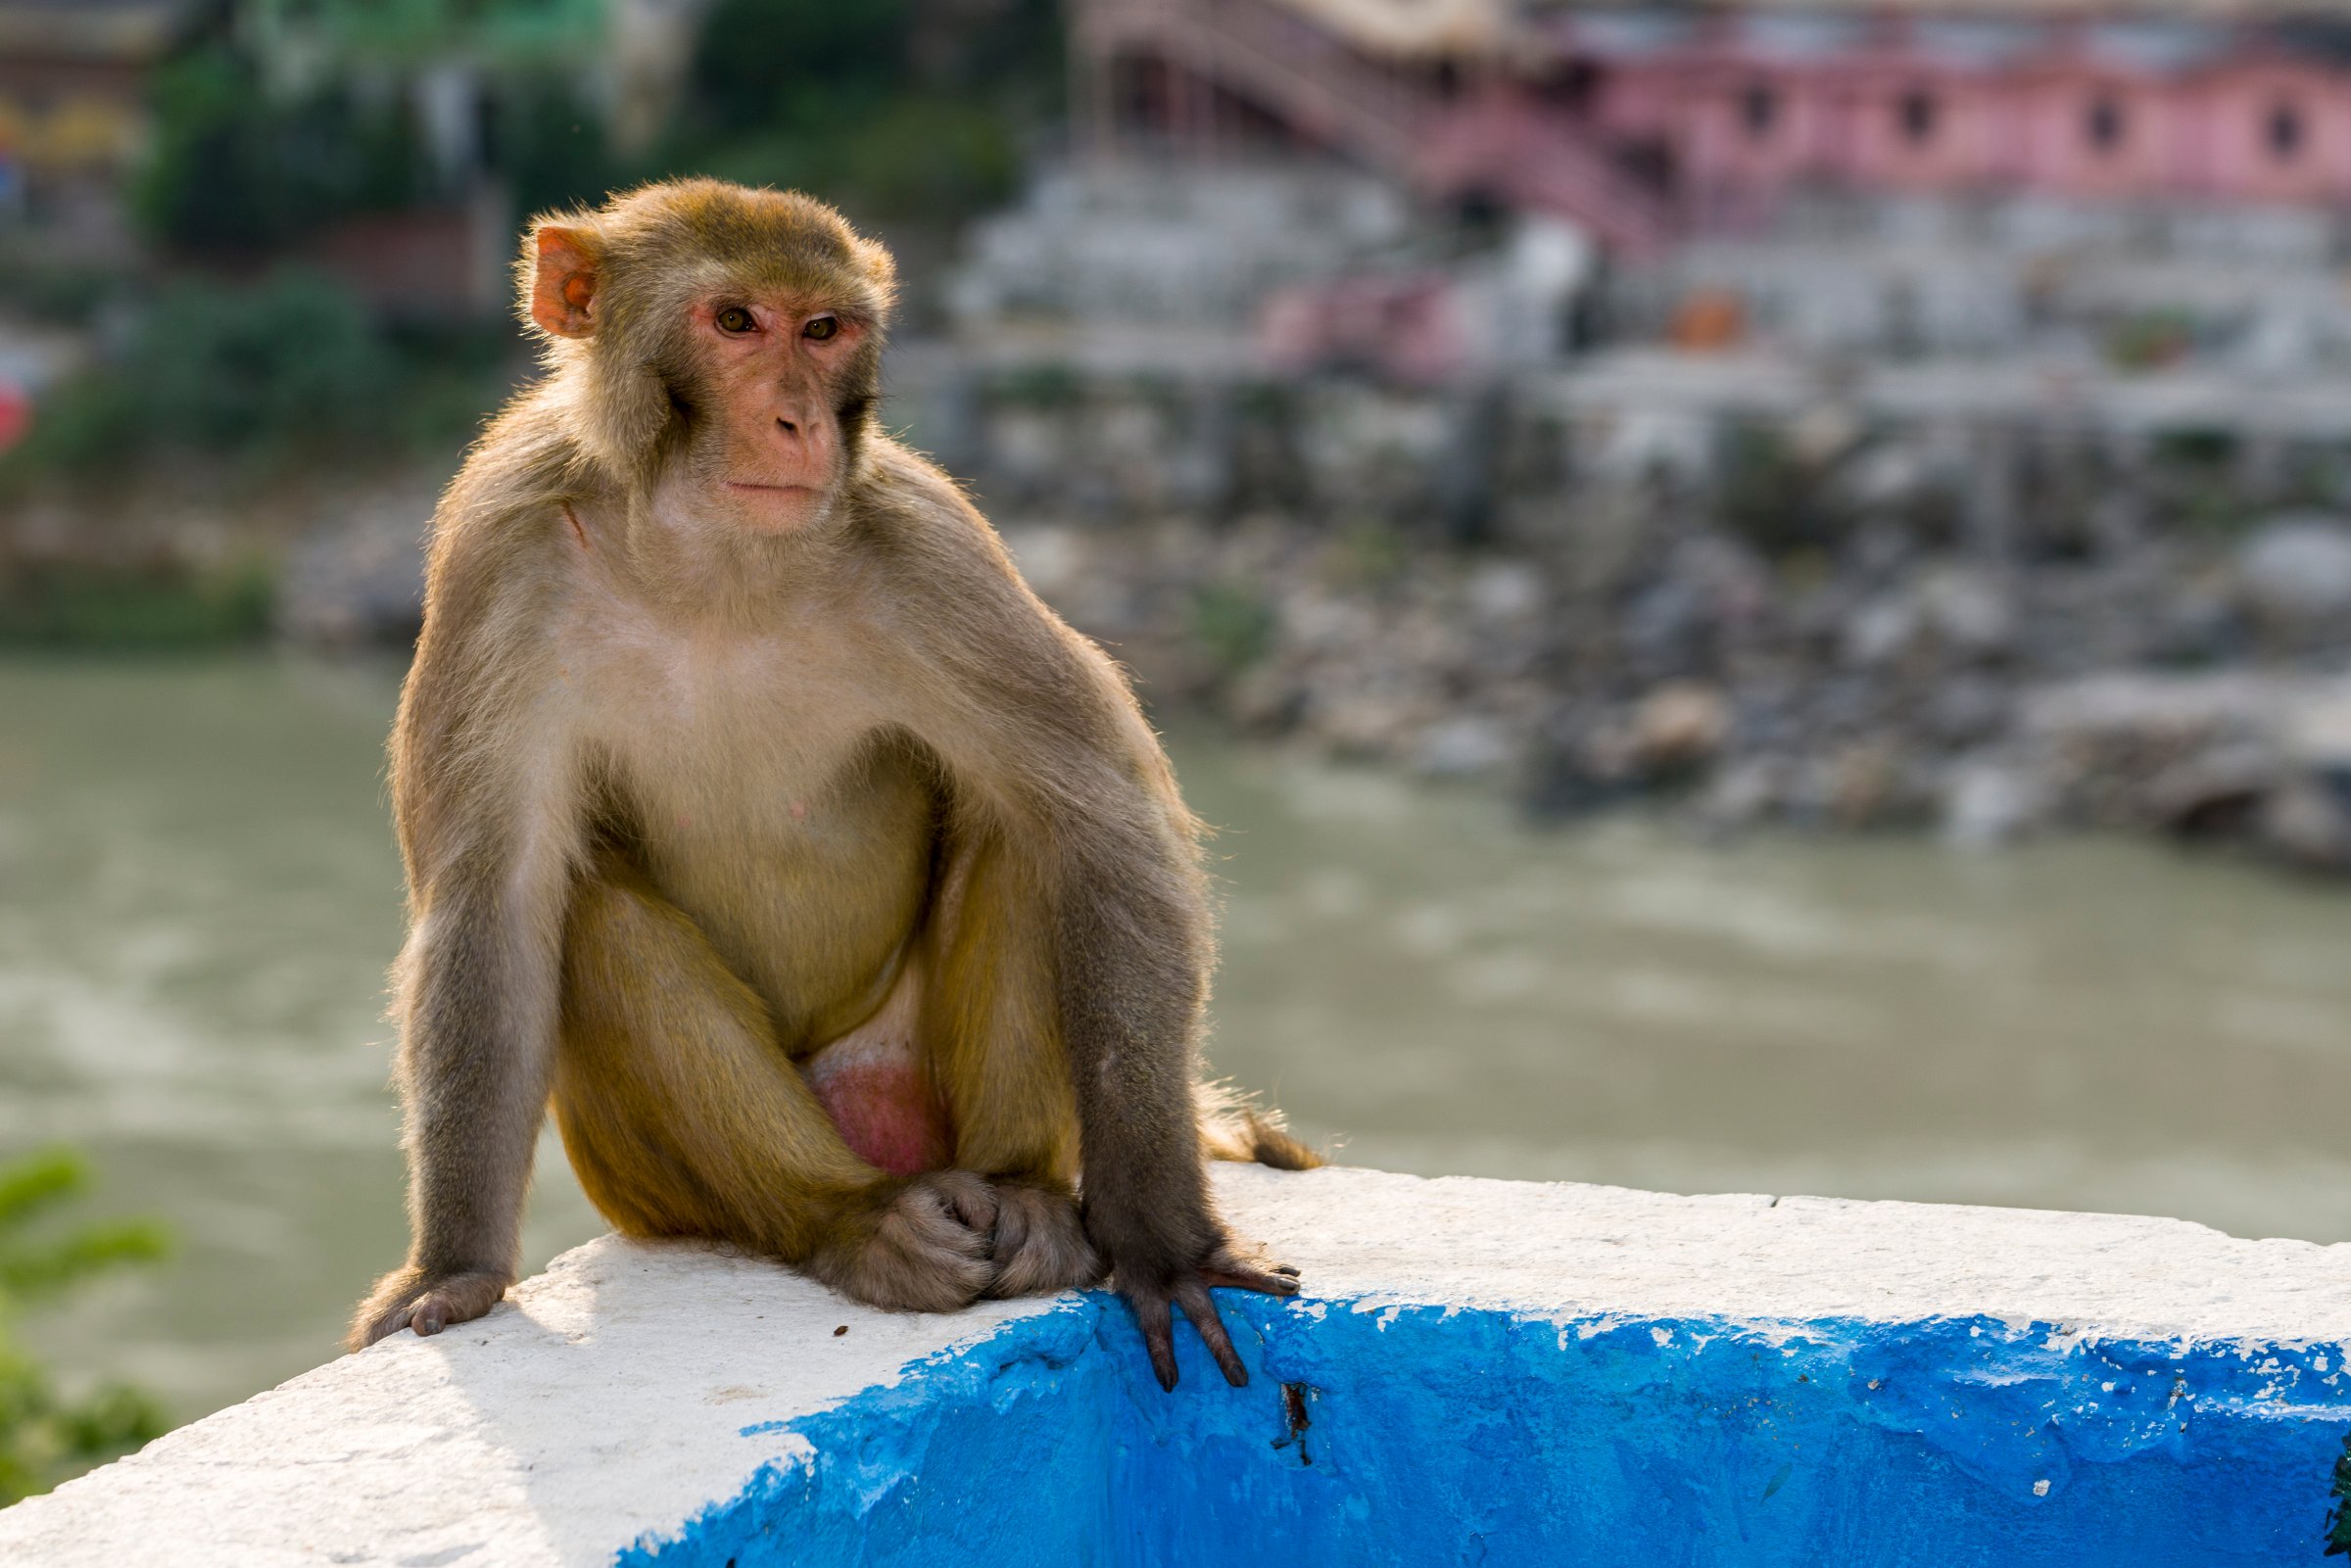 A rhesus monkey ( Macaca mulatta ) is sitting on a wall high